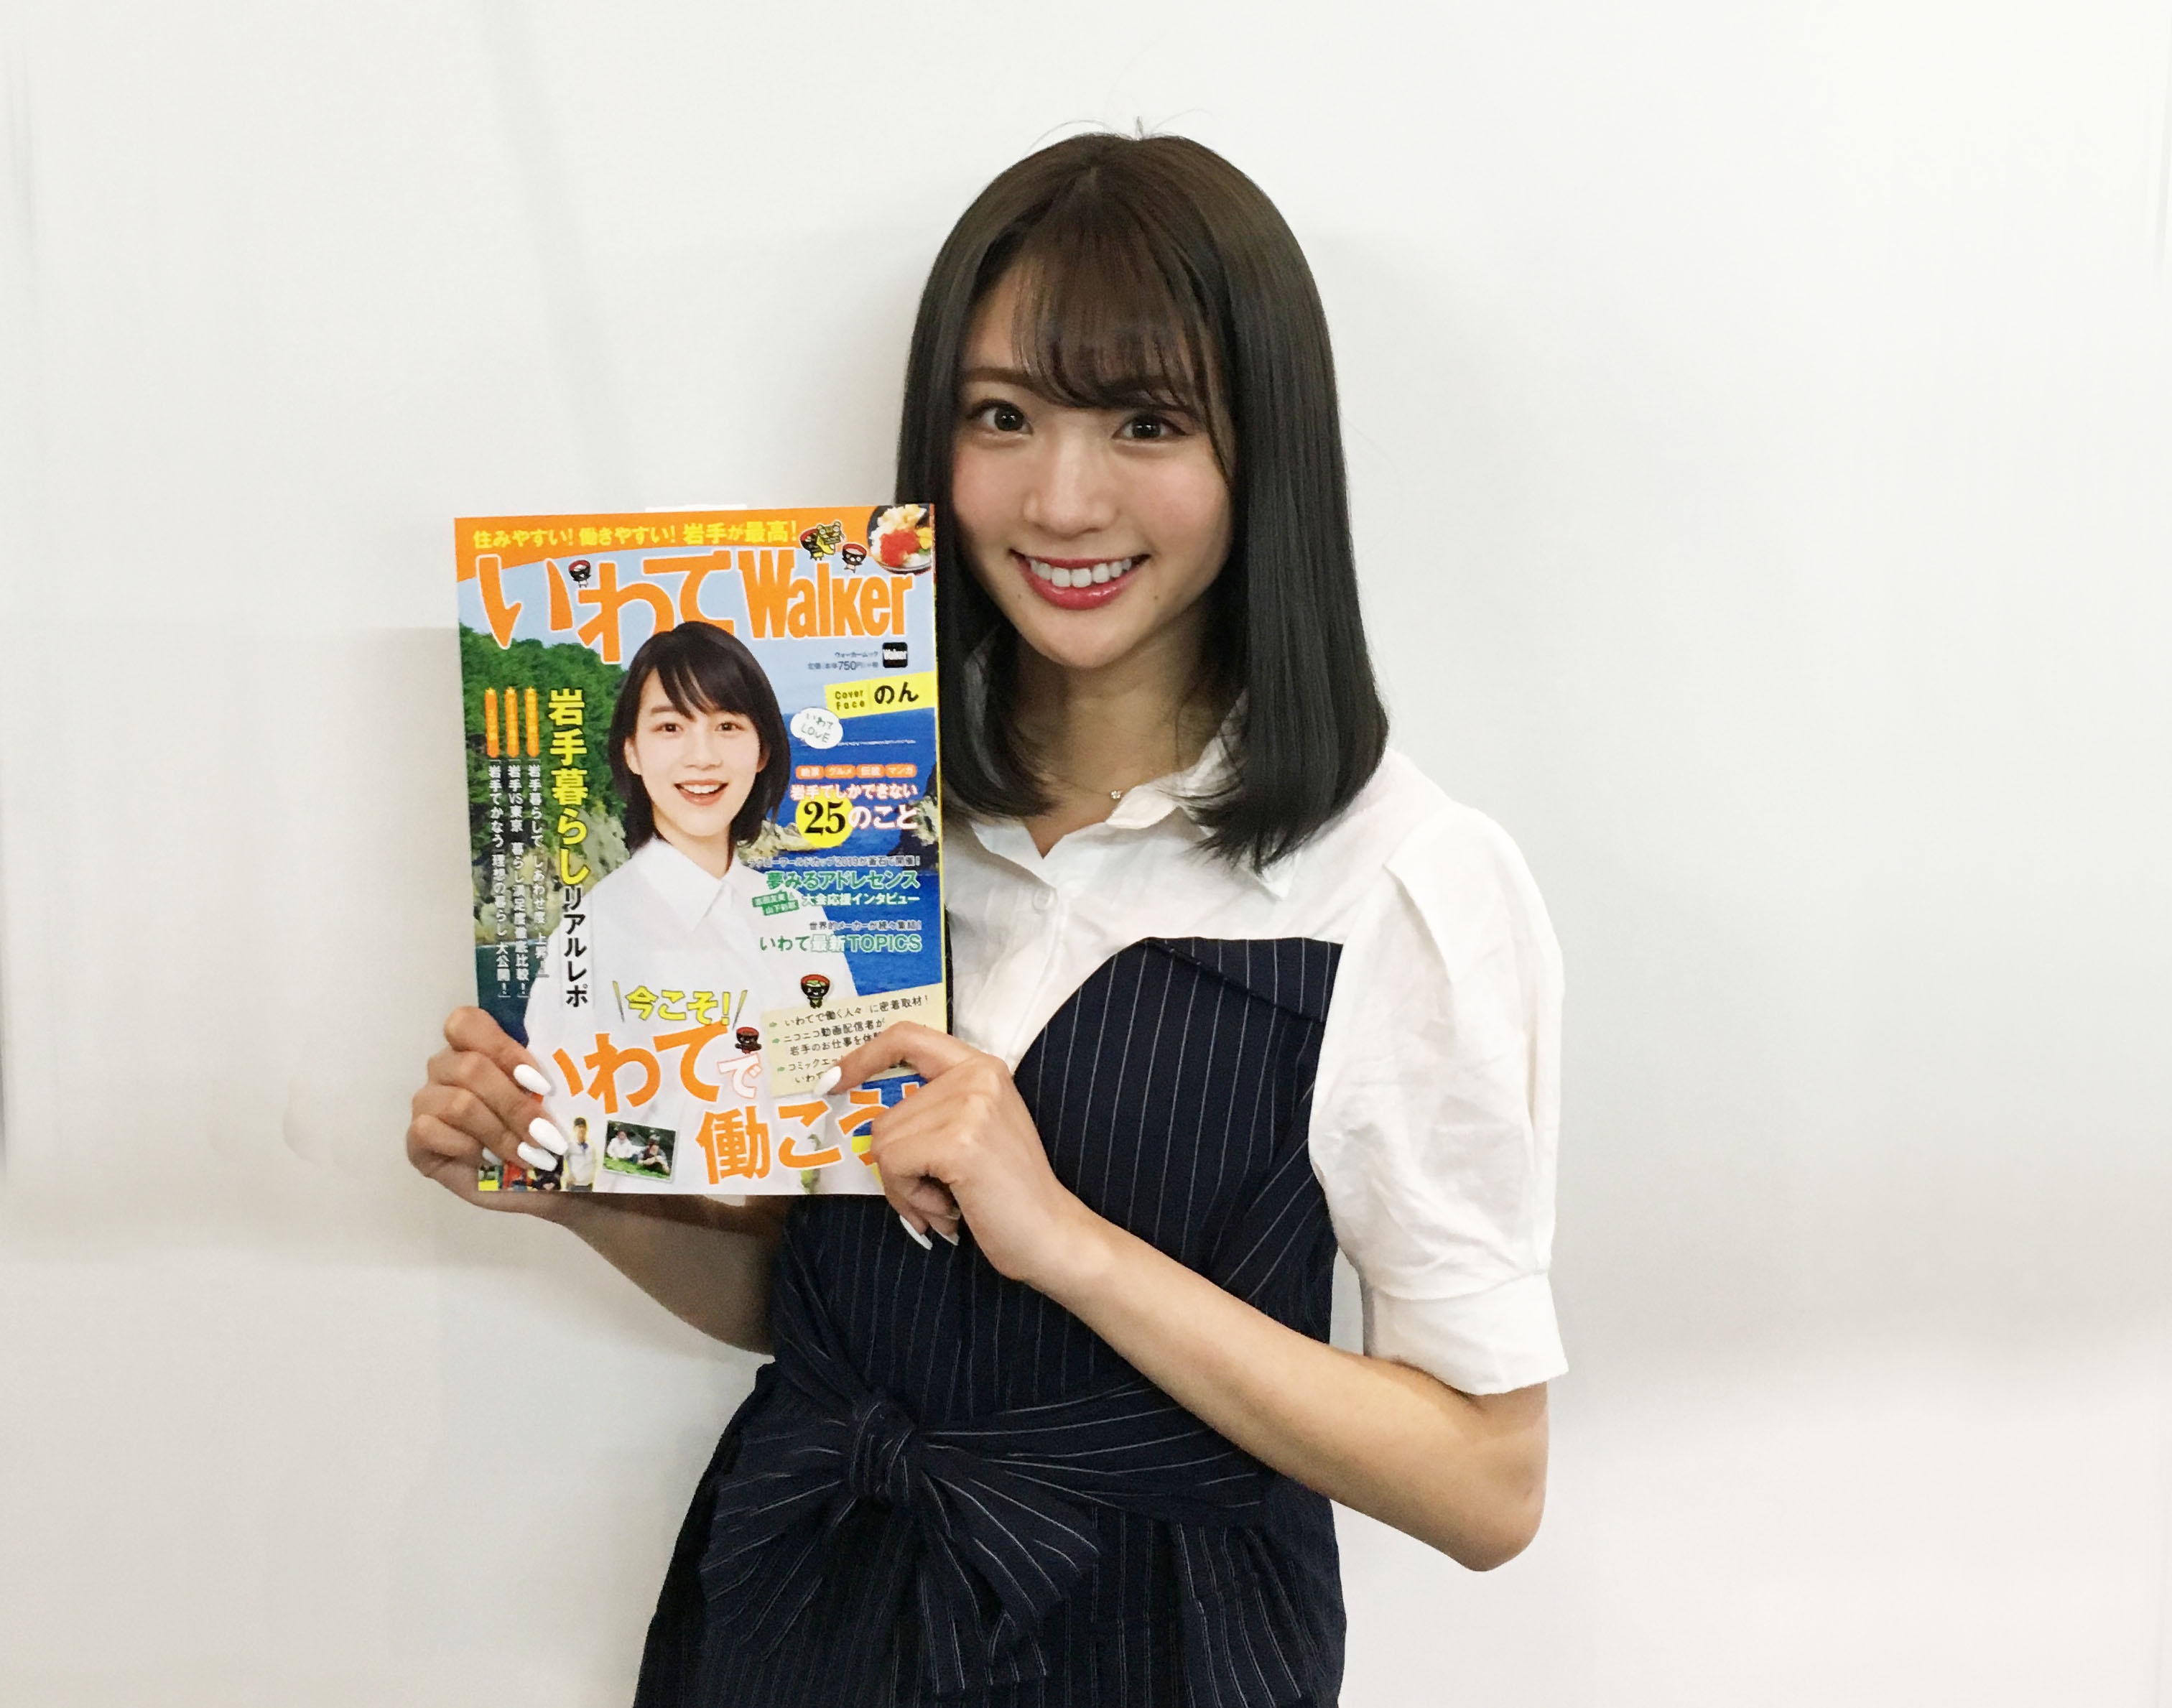 夢みるアドレセンス・志田友美がニコ超で地元岩手をアピール「日本で2番目に広い」